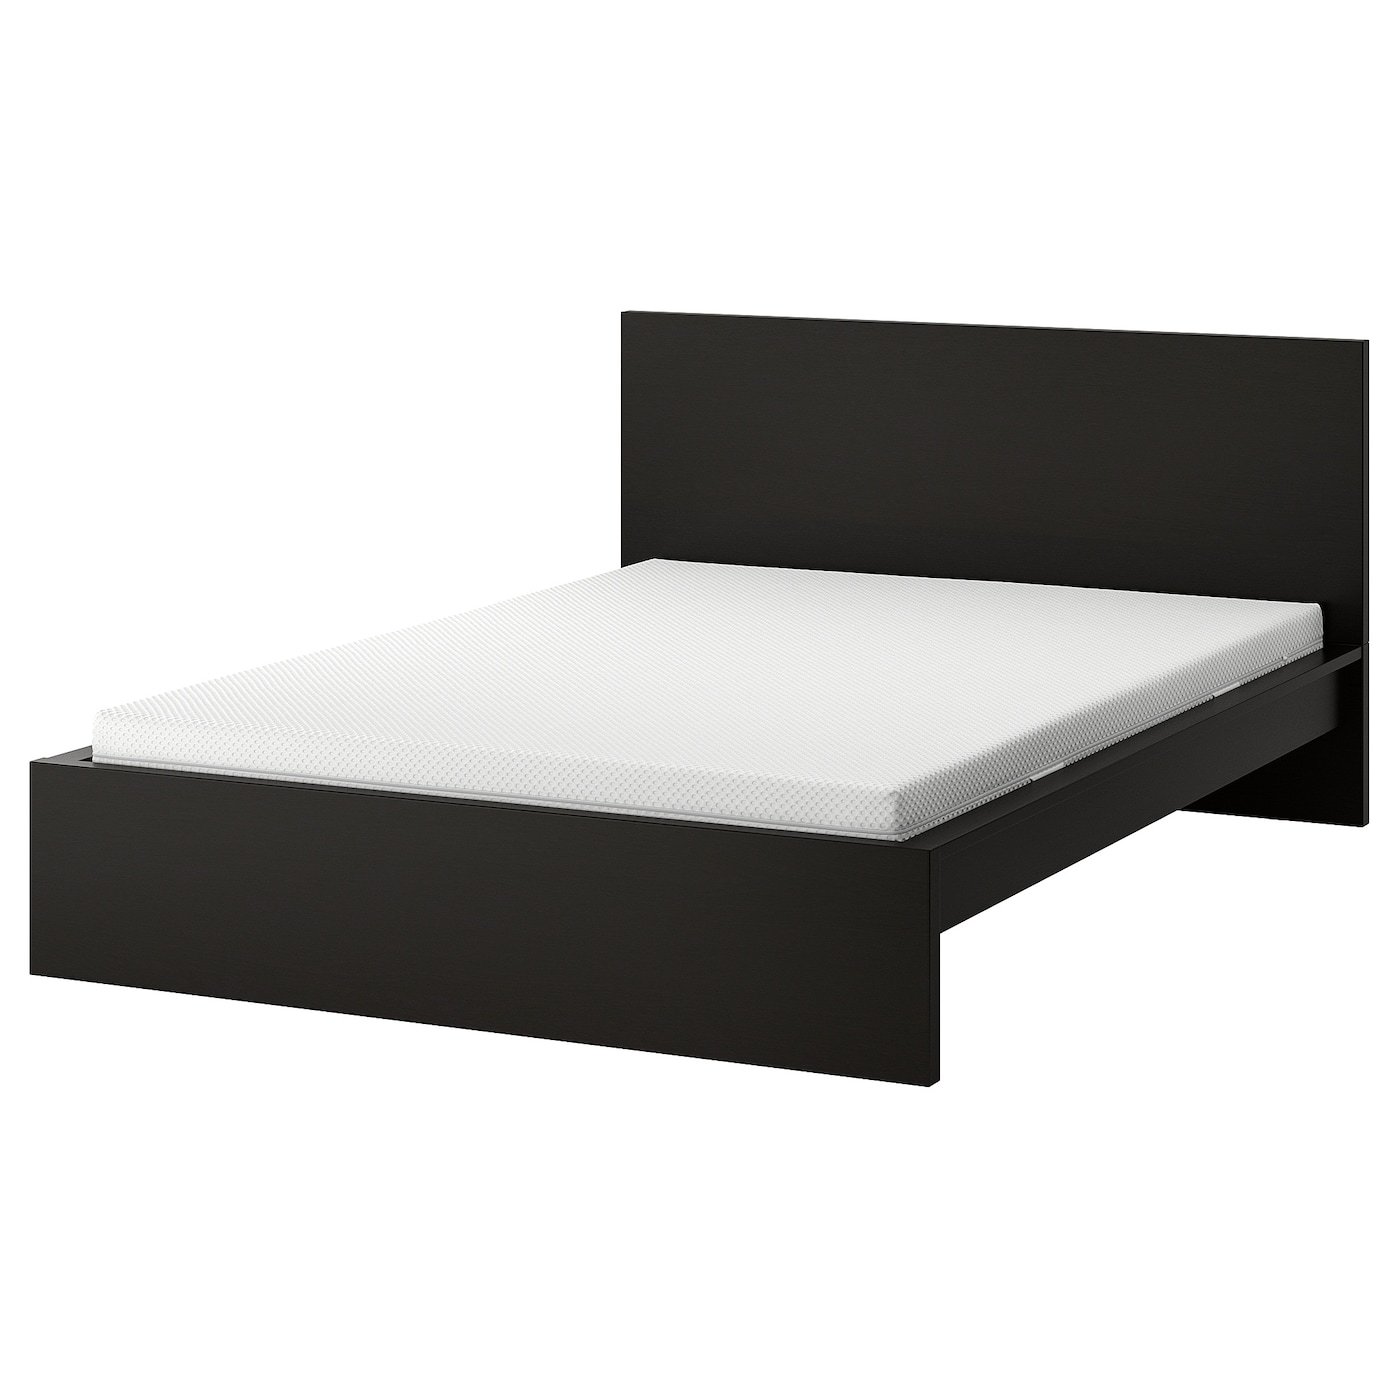 Кровать - IKEA MALM, 200х140 см, жесткий матрас,  черный, МАЛЬМ ИКЕА